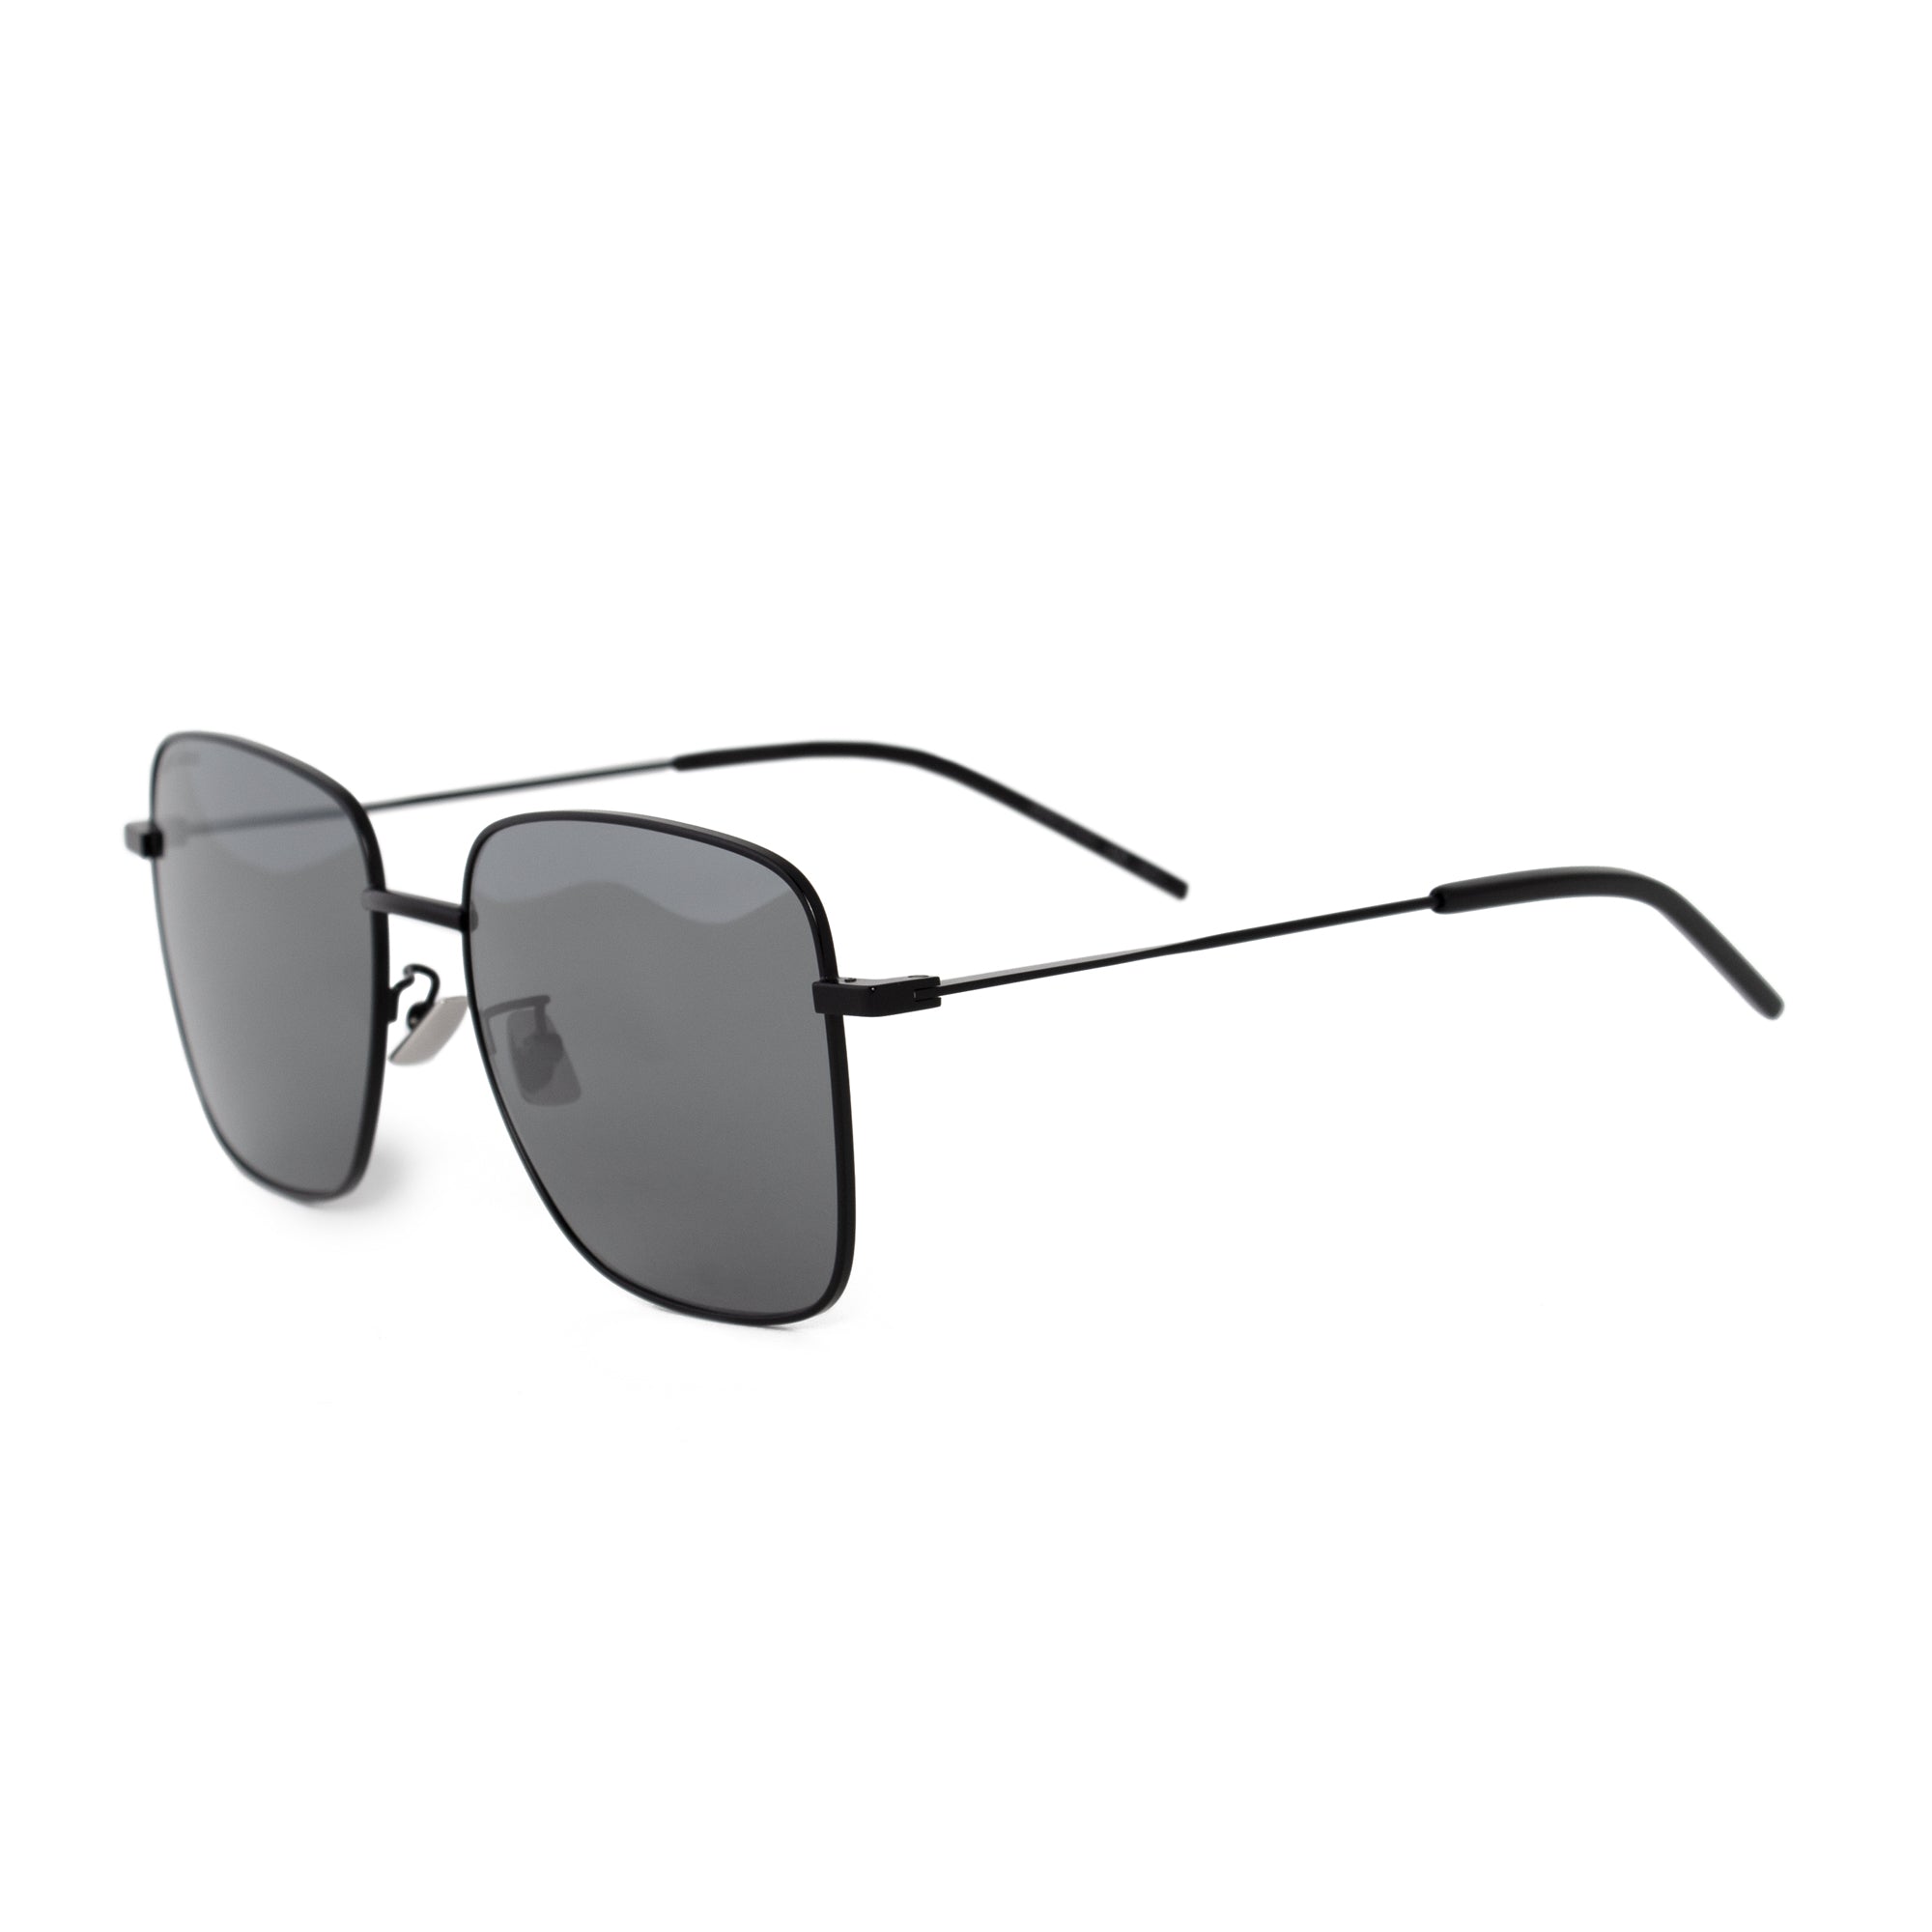 Saint Laurent Square Sunglasses SL312 004 57